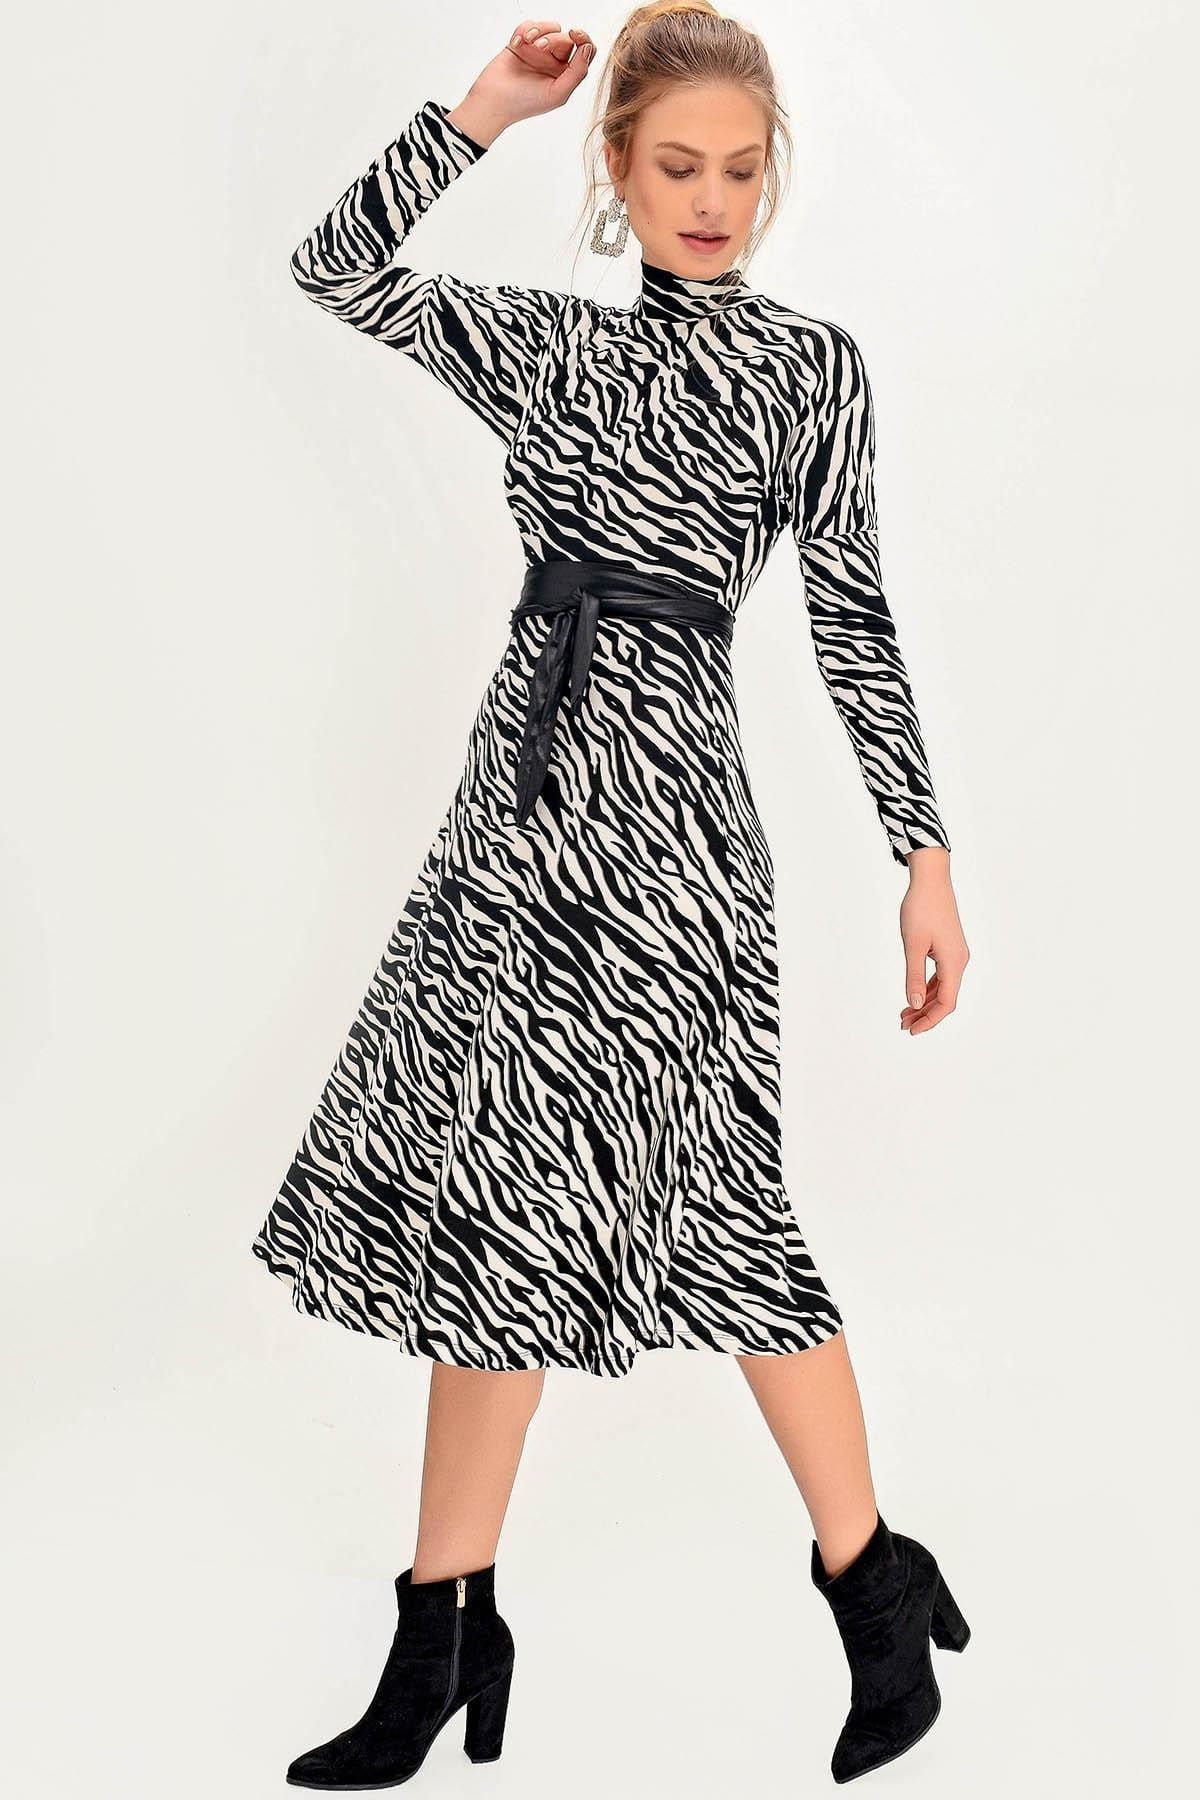 Hadise Kadın Siyah Kuşaklı Zebra Desenli Elbise 1175